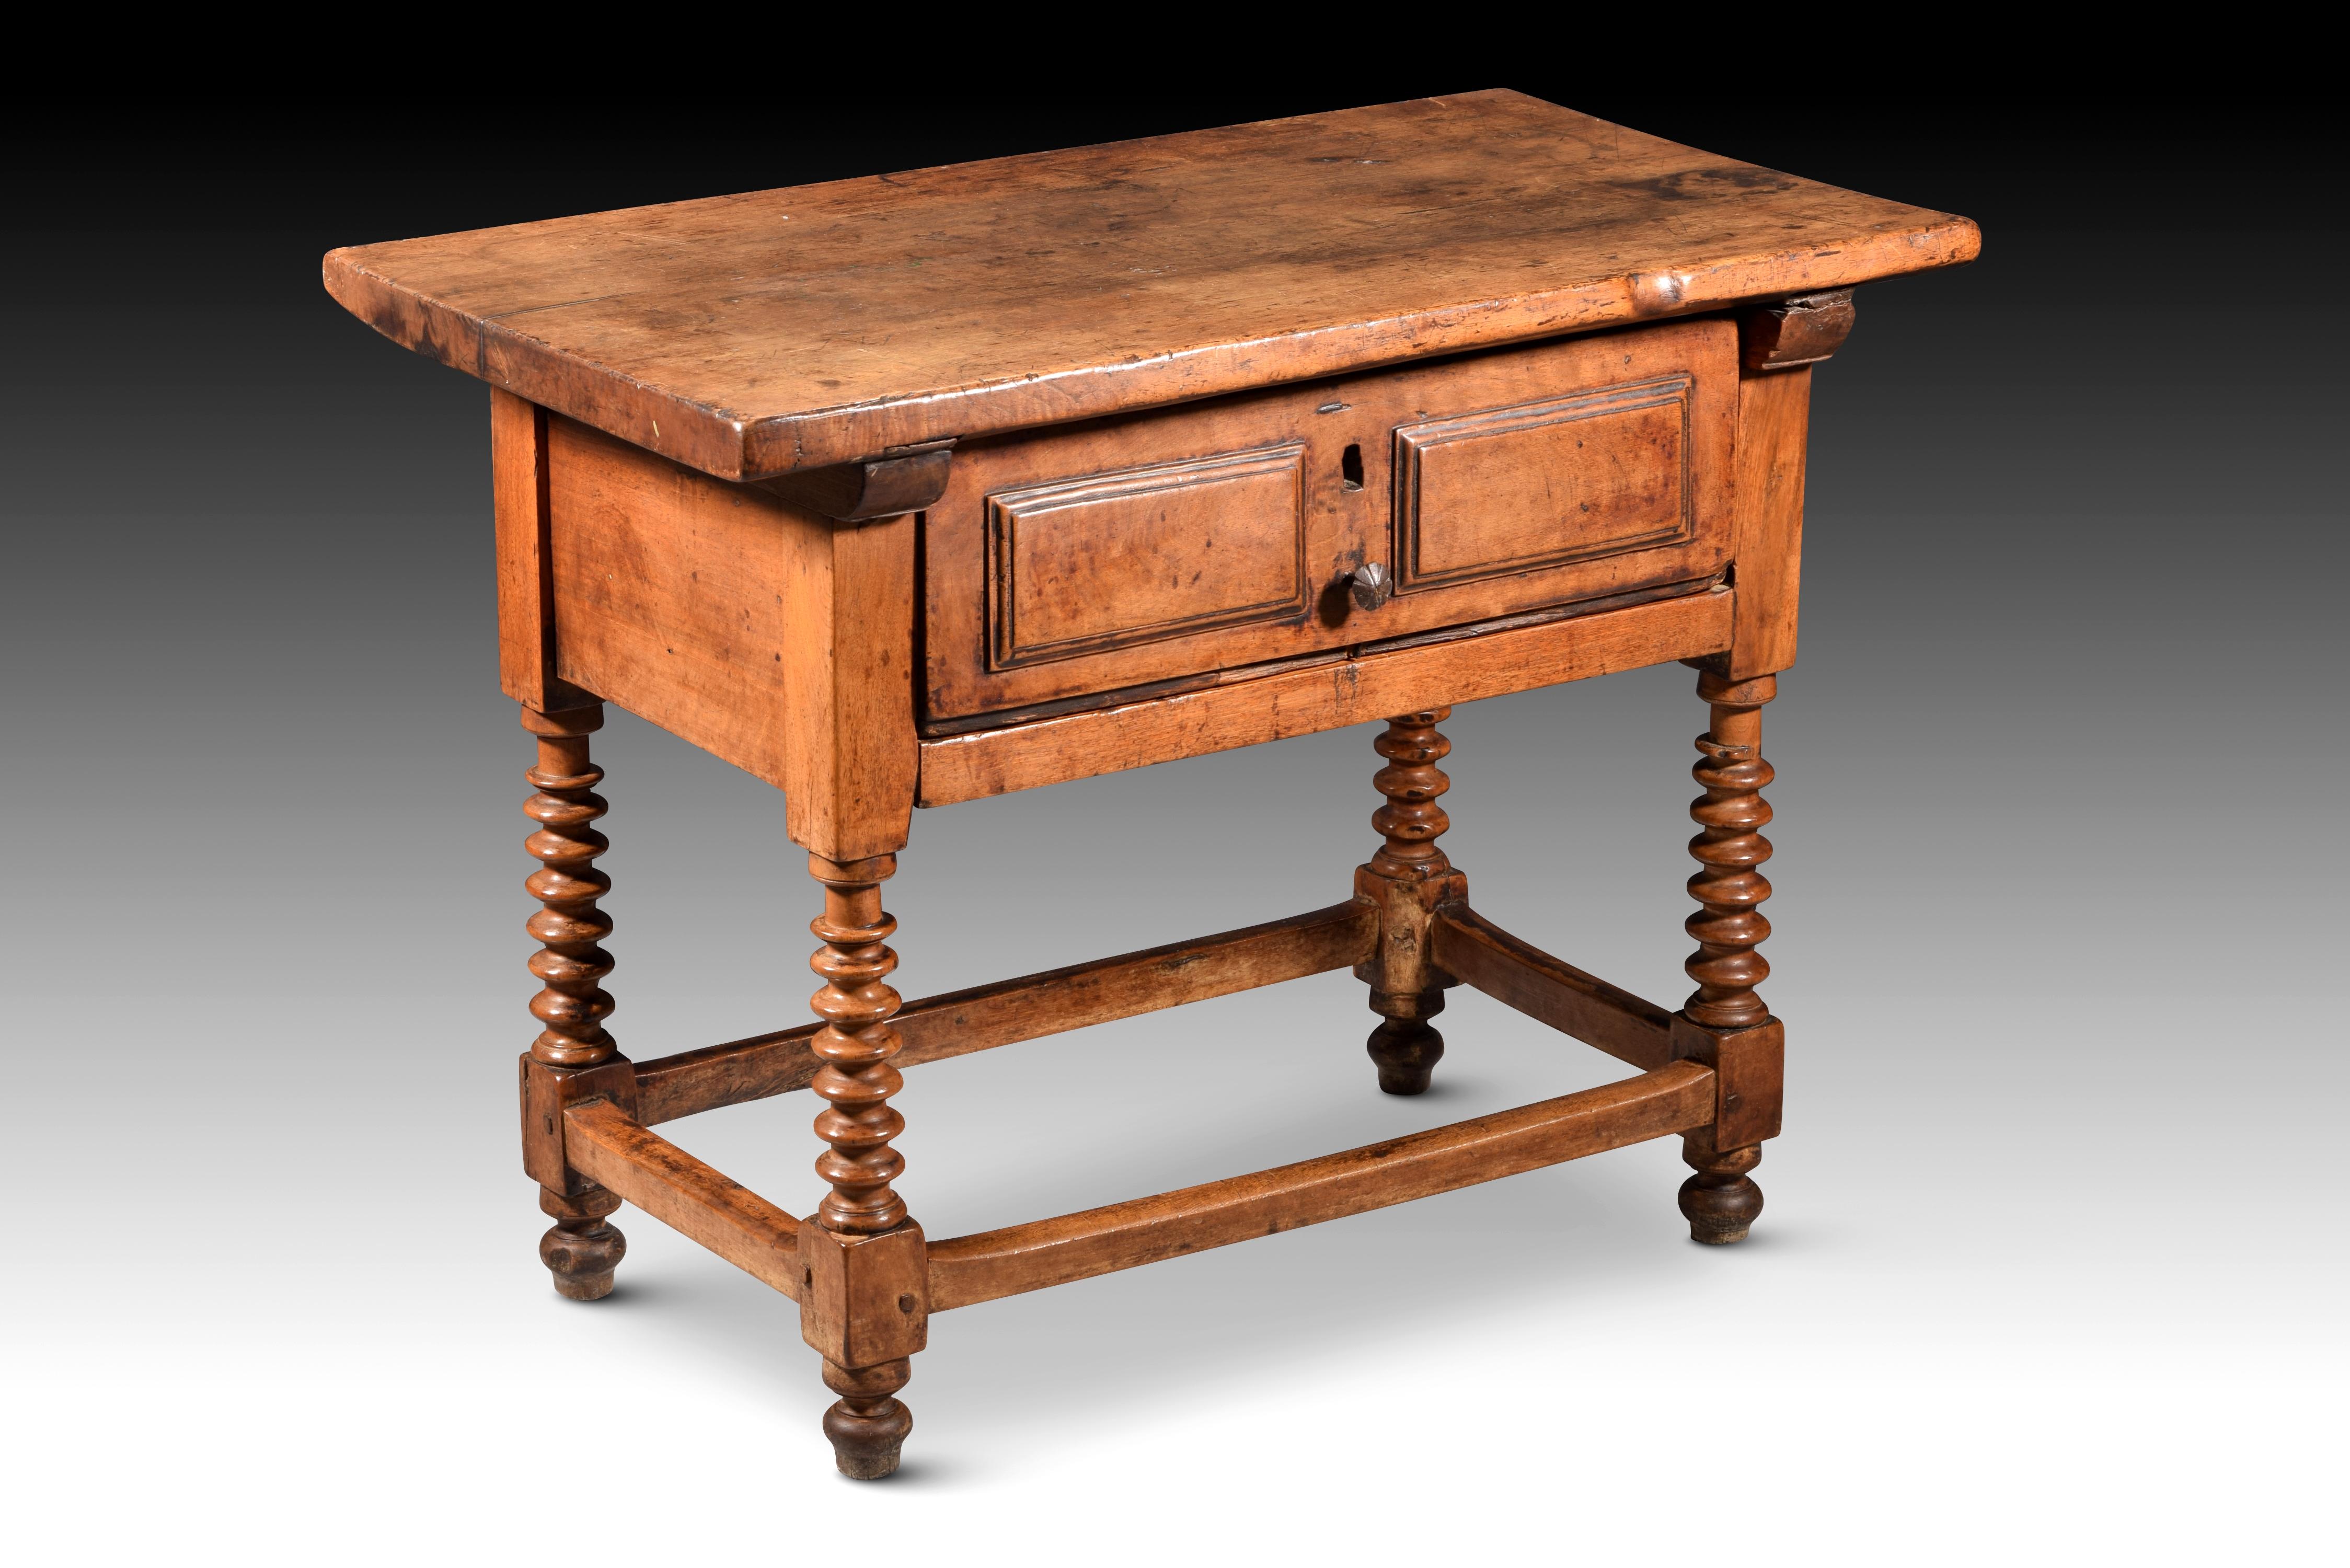 Tisch mit linsenförmigem Bein. Walnussholz. Guadalajara, Spanien, 17. Jahrhundert. 
Tisch mit einer flachen rechteckigen Platte, die an der Vorderseite eine Schublade hat, die von zwei Konsolen oder glatten Leisten flankiert wird, und die aus